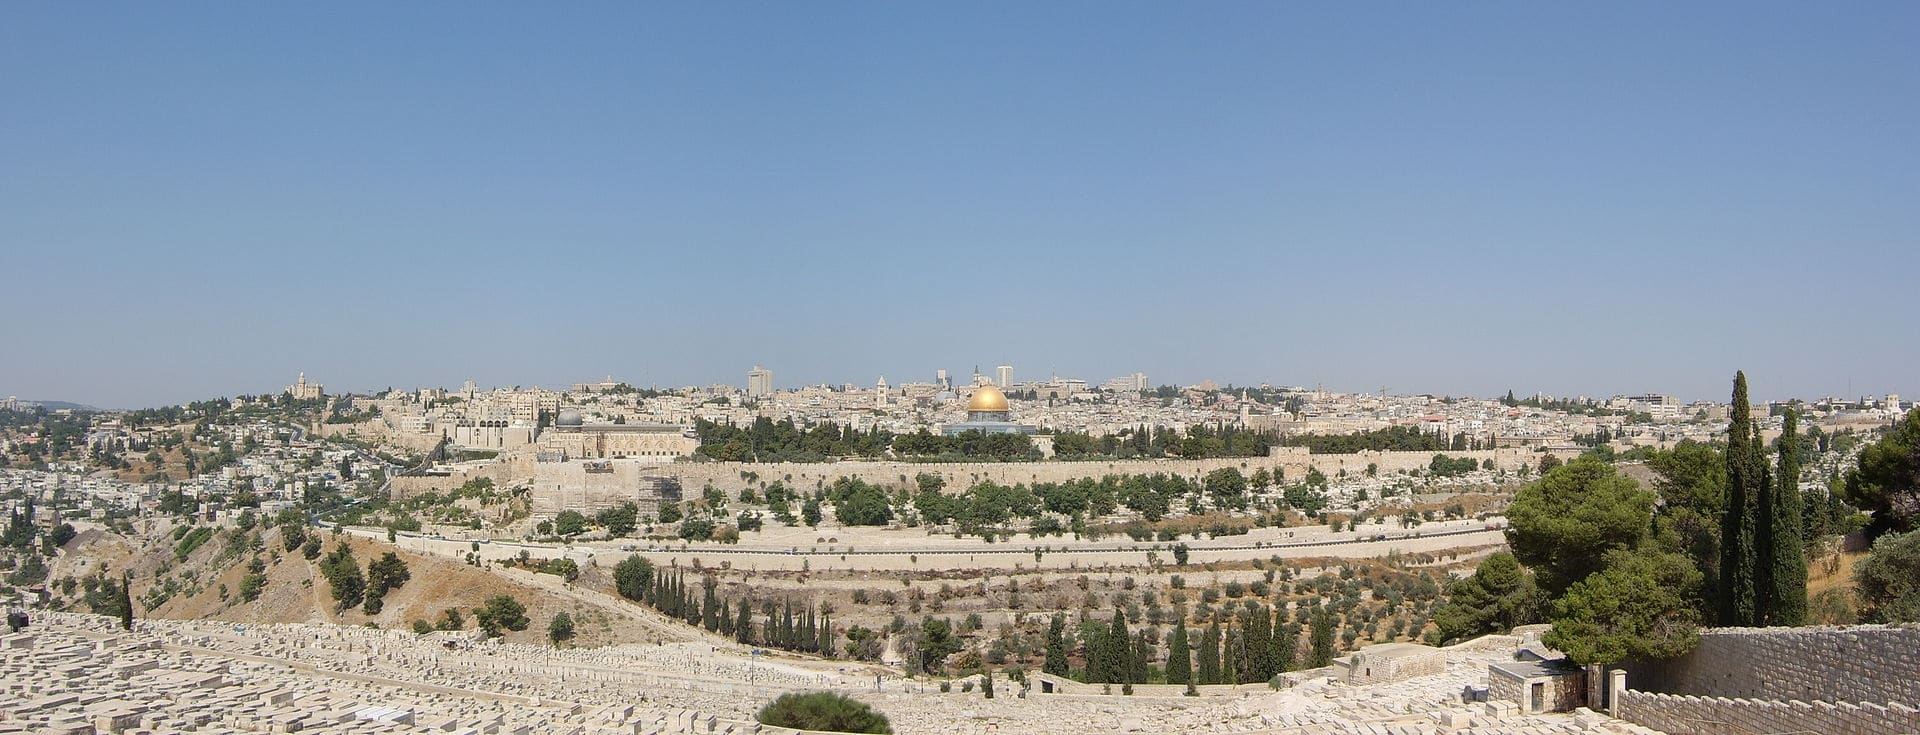 Sanhedryn wzywa Trumpa i Putina do poparcia odbudowy świątyni w Jerozolimie